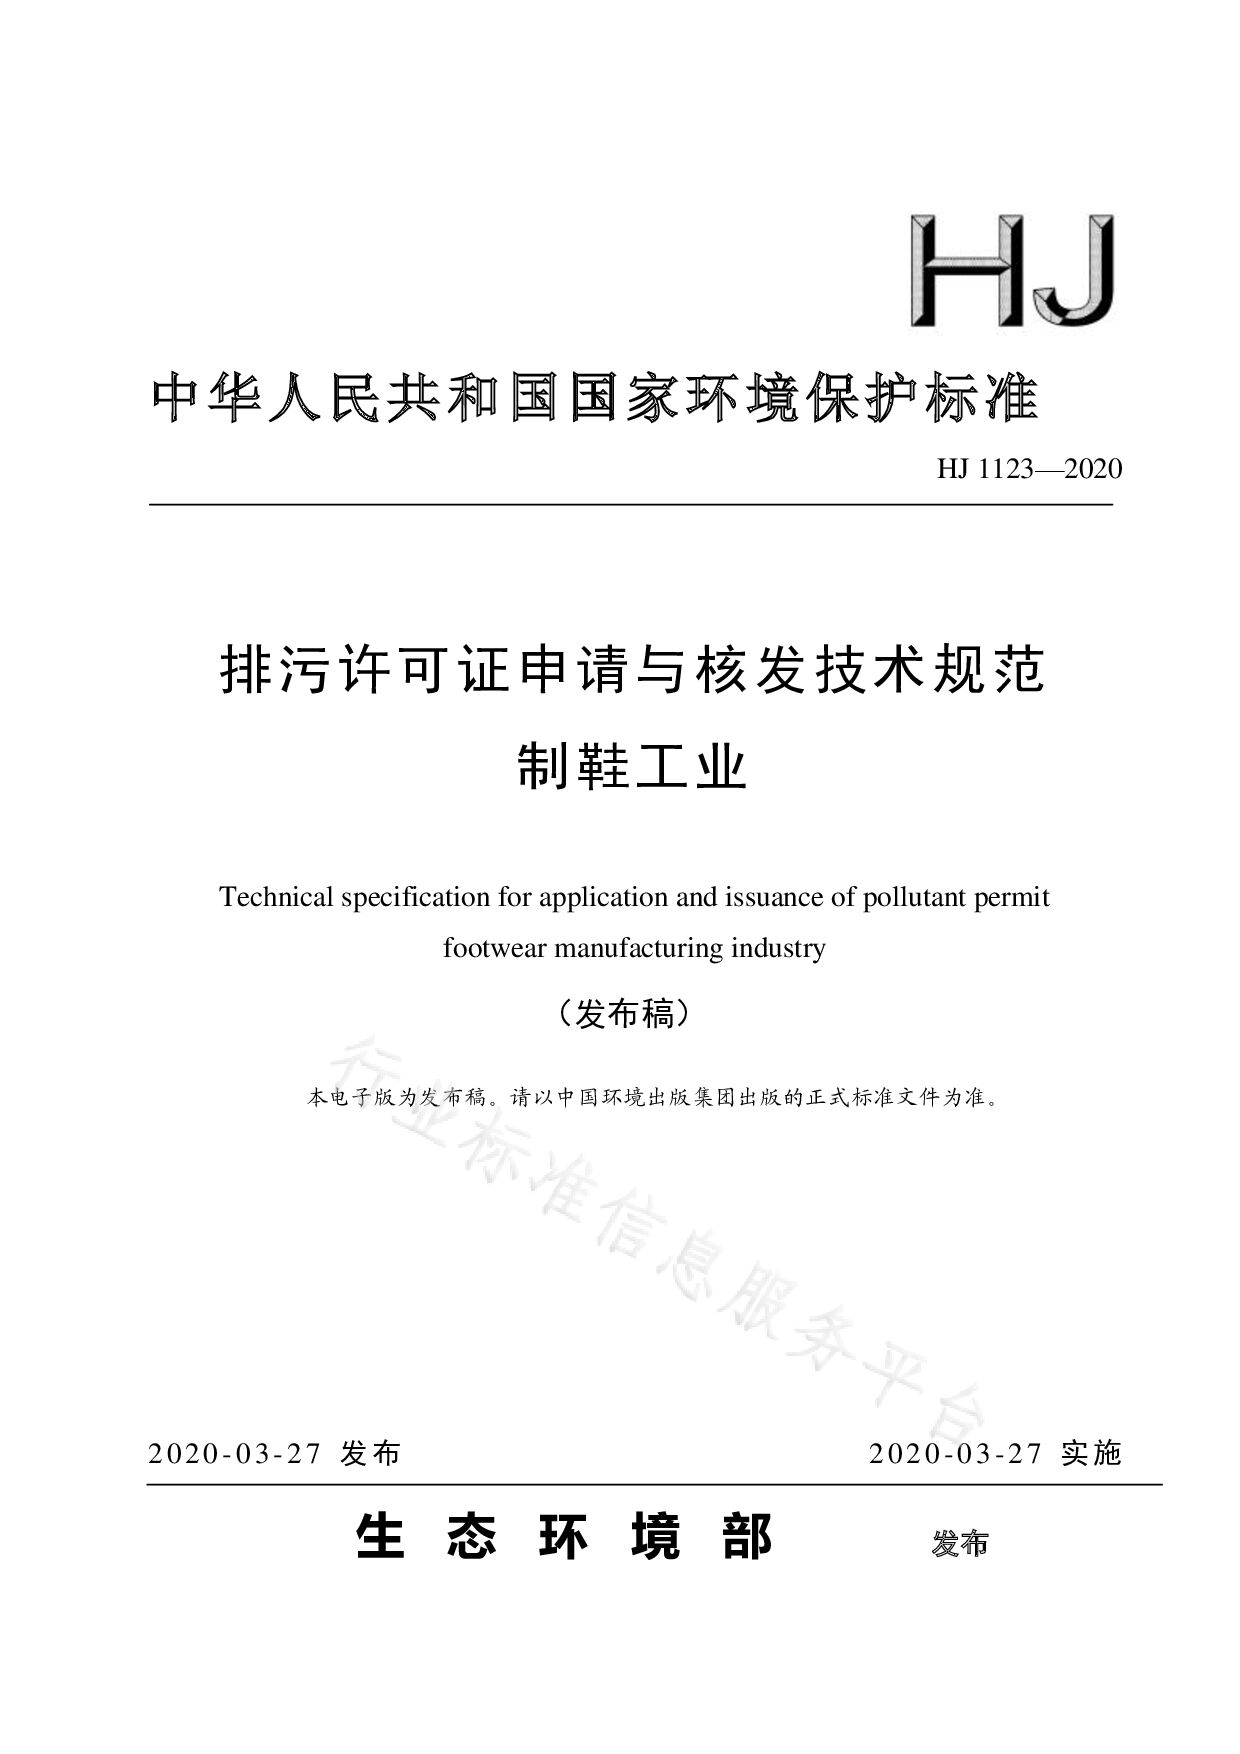 HJ 1123-2020封面图